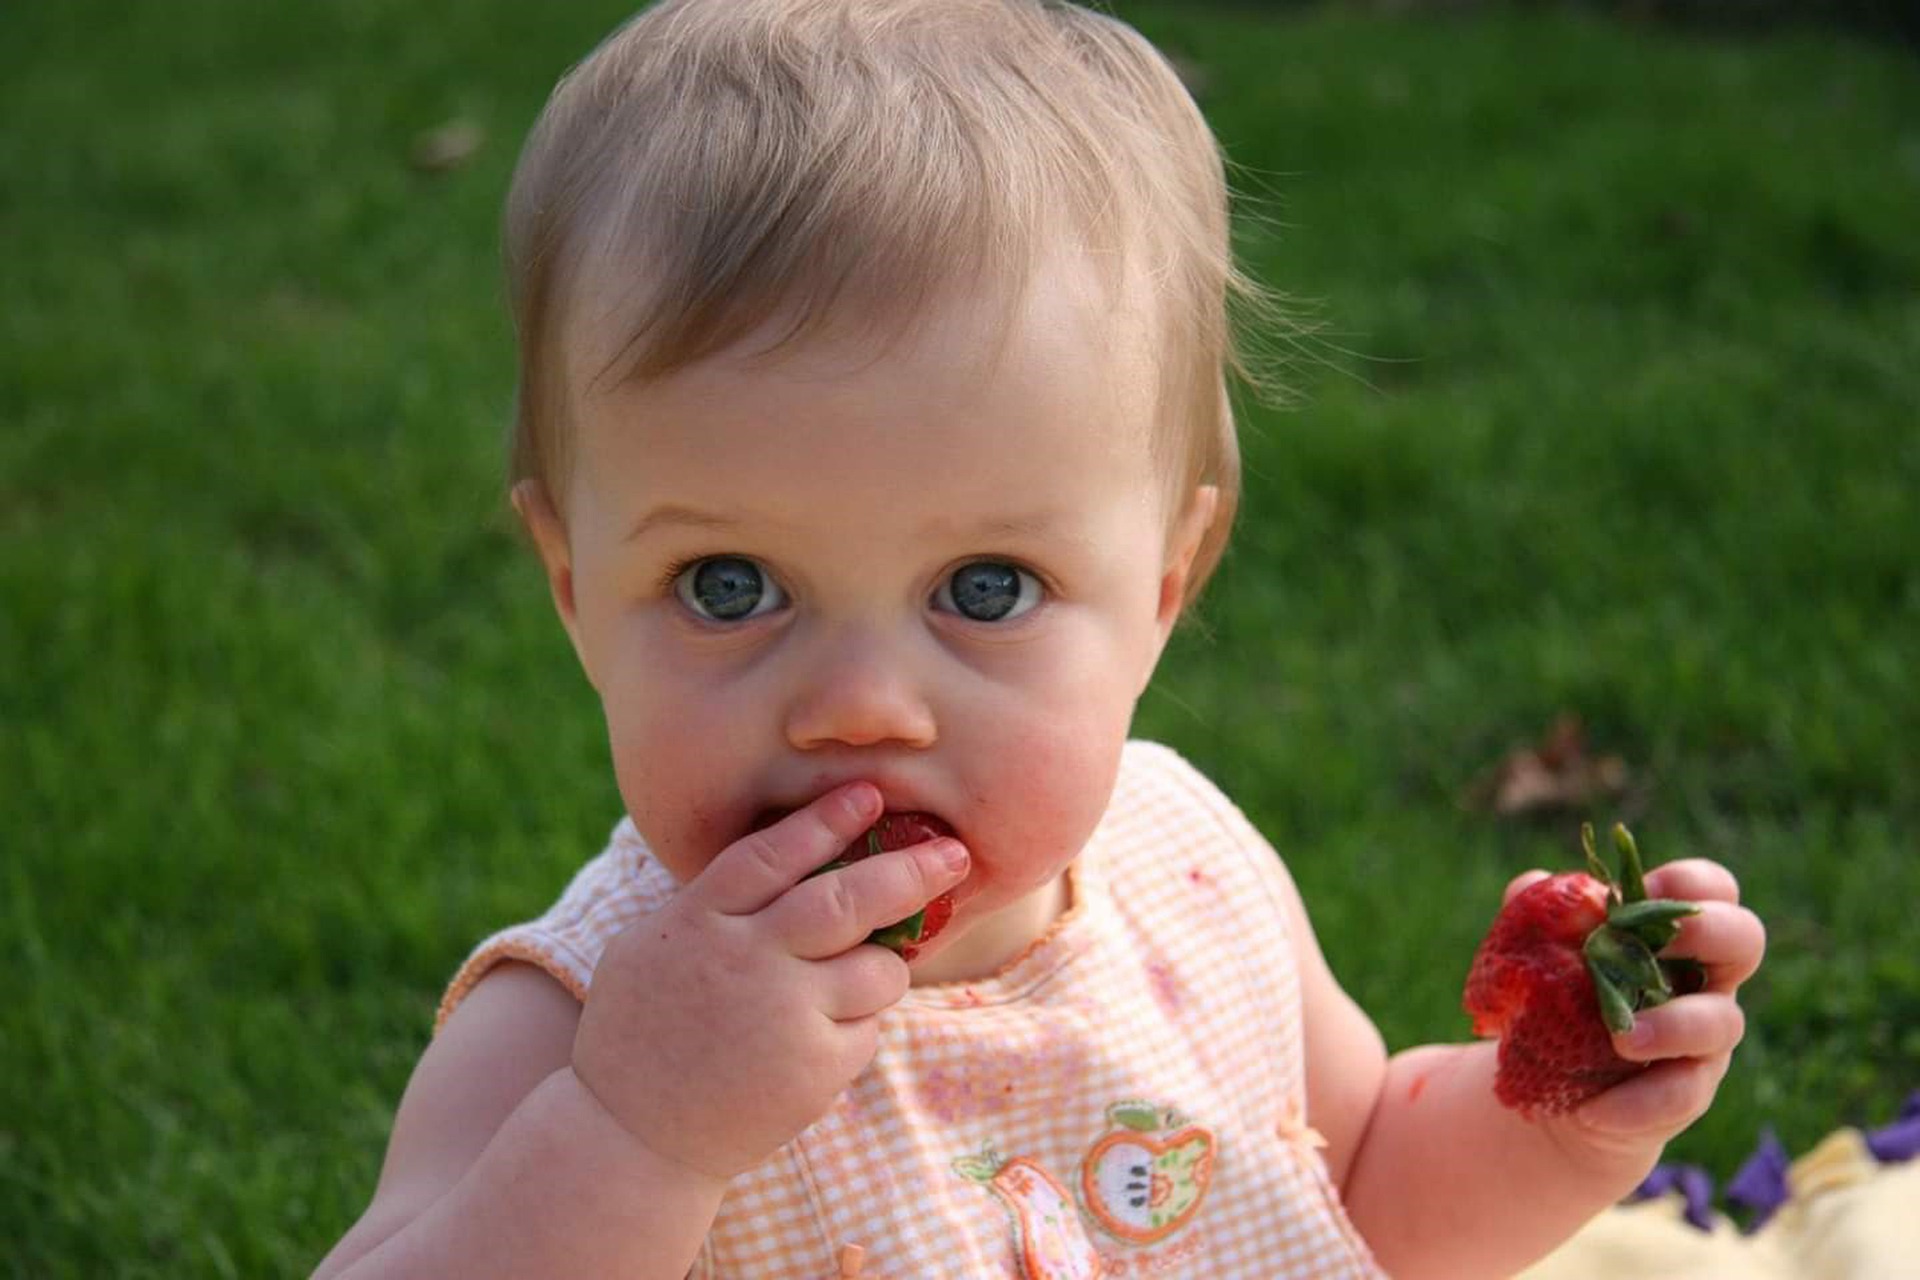 Ein Baby sitzt auf dem Rasen und isst mit beiden Händen eine Erdbeere.